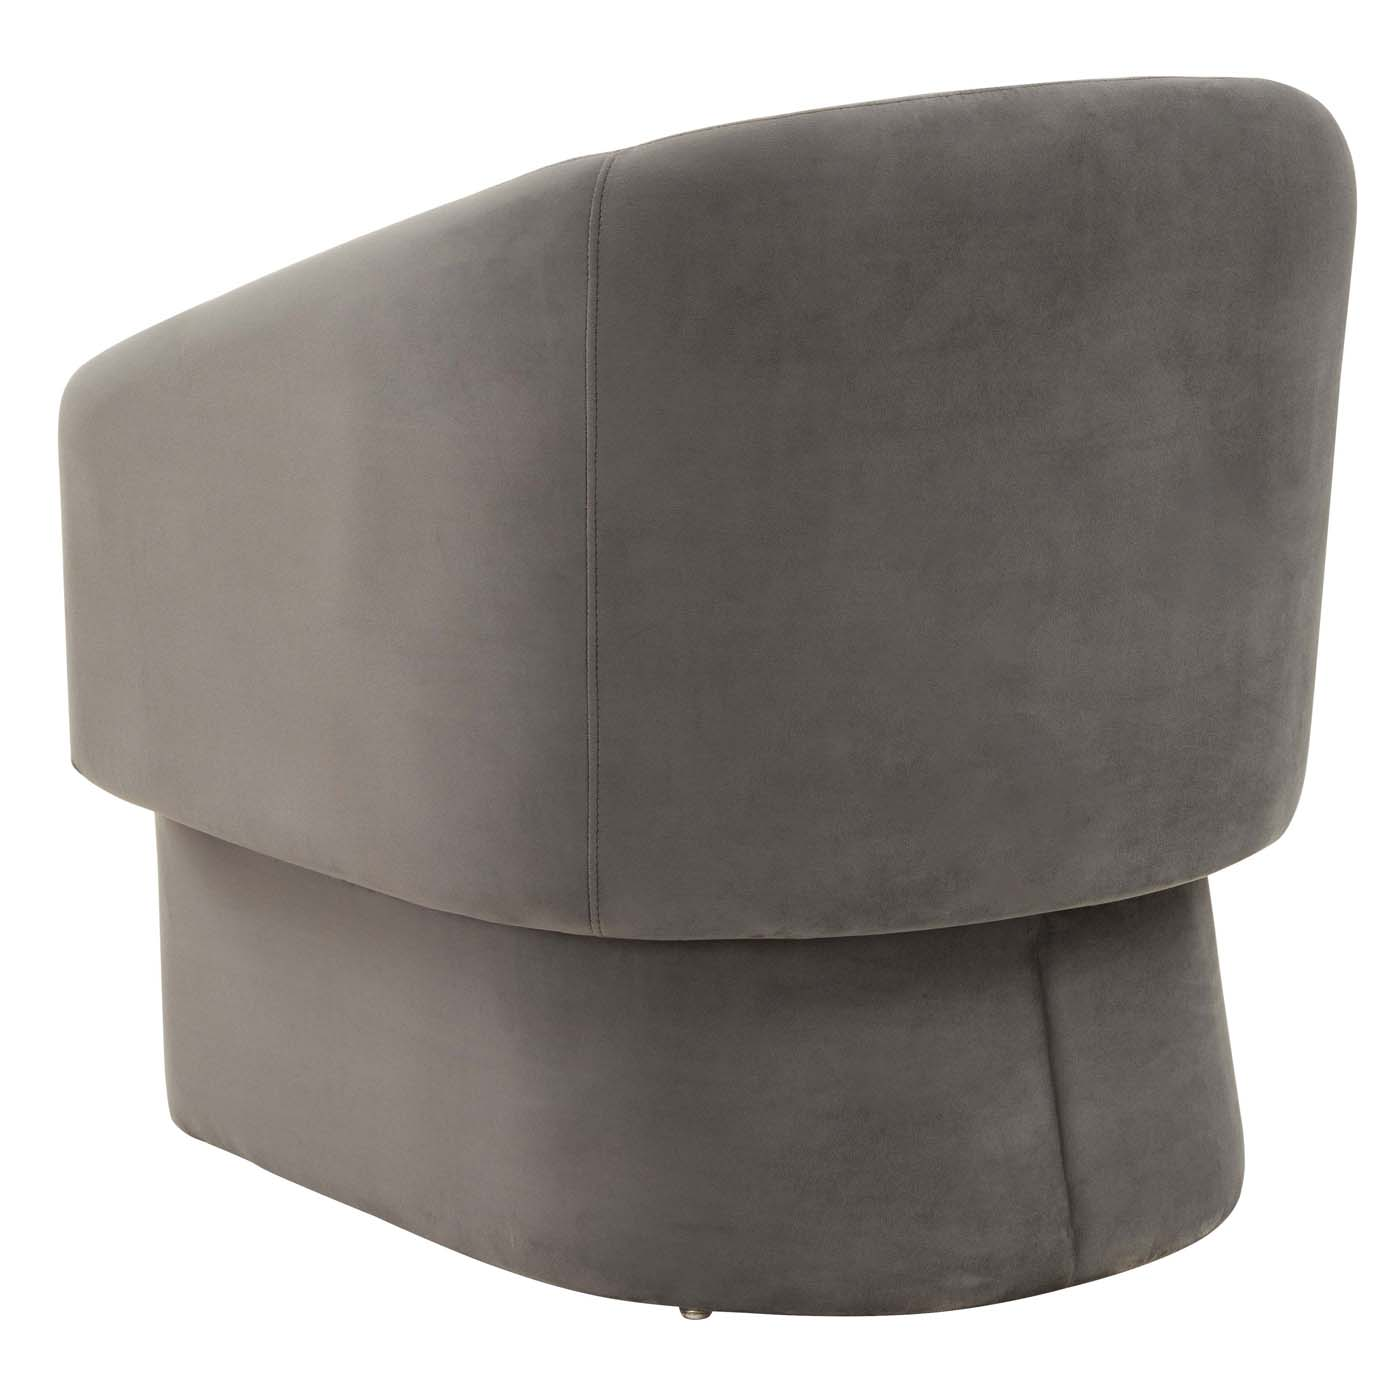 Safavieh Couture Susie Barrel Back Accent Chair - Dark Grey